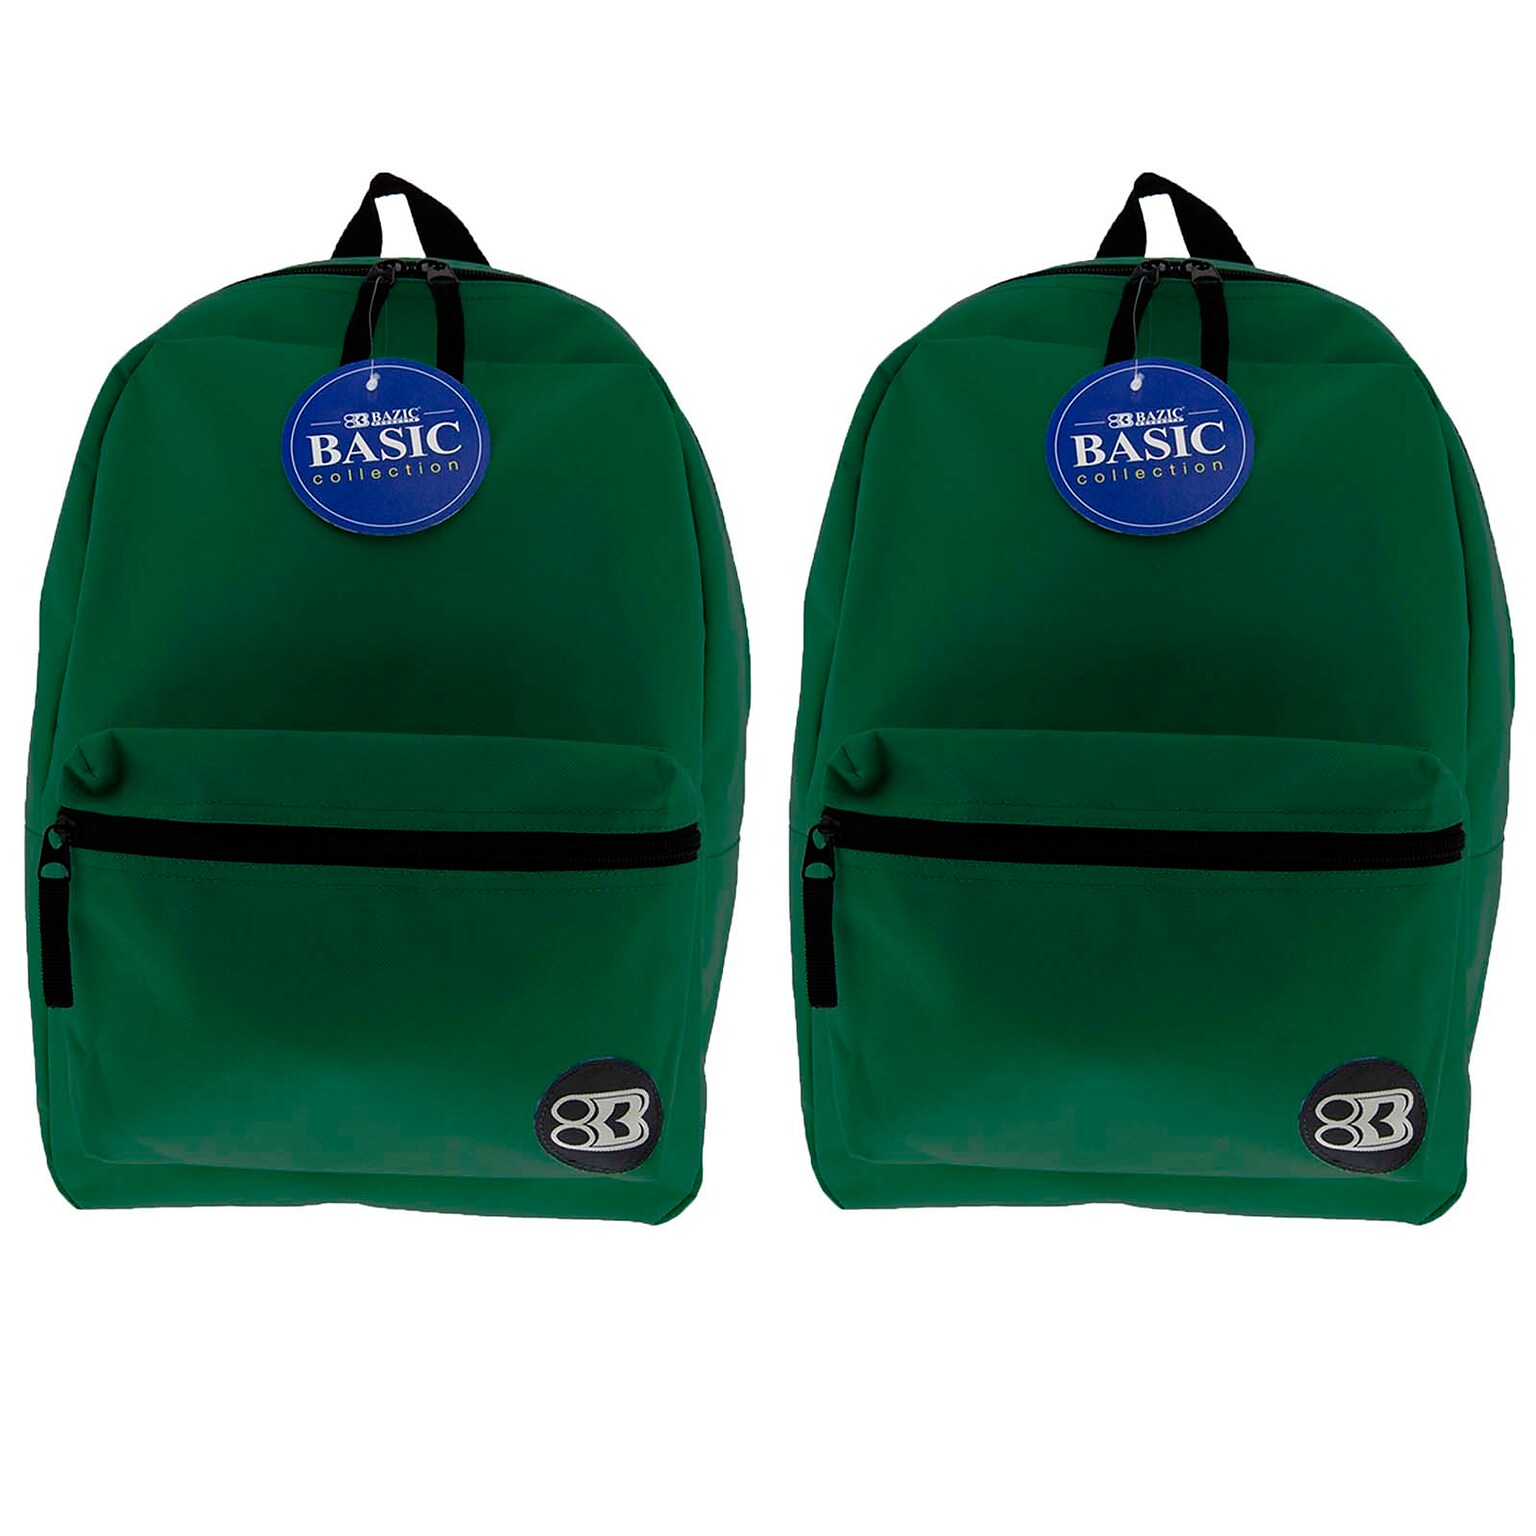 Bazic Basic Backpack, 16, Green, Pack of 2 (BAZ1033-2)